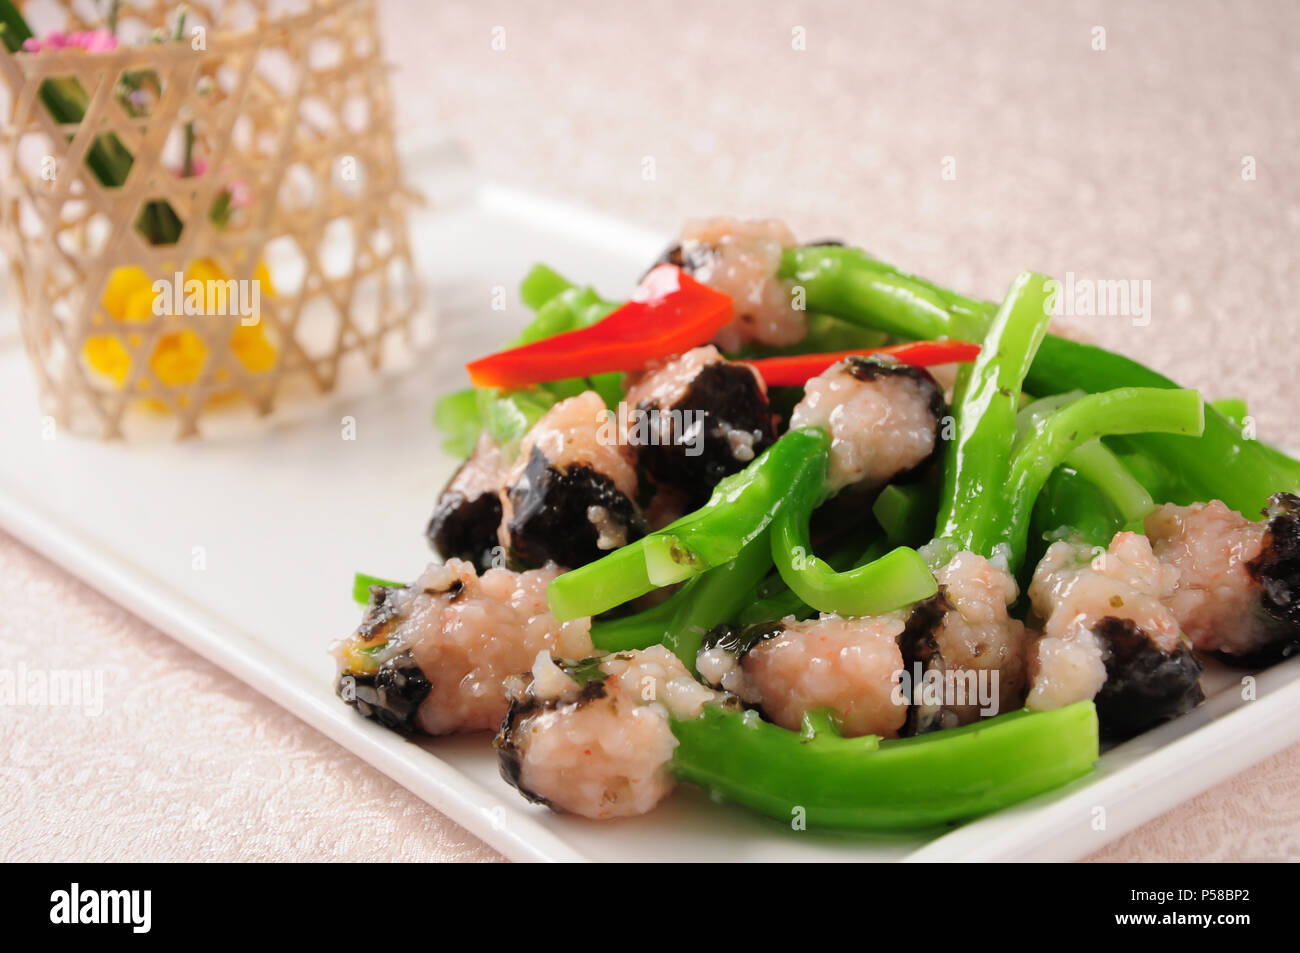 Chinesische Küche - Sauteed chinesischer Brokkoli mit Hackfleisch/Garnelen Stockfoto